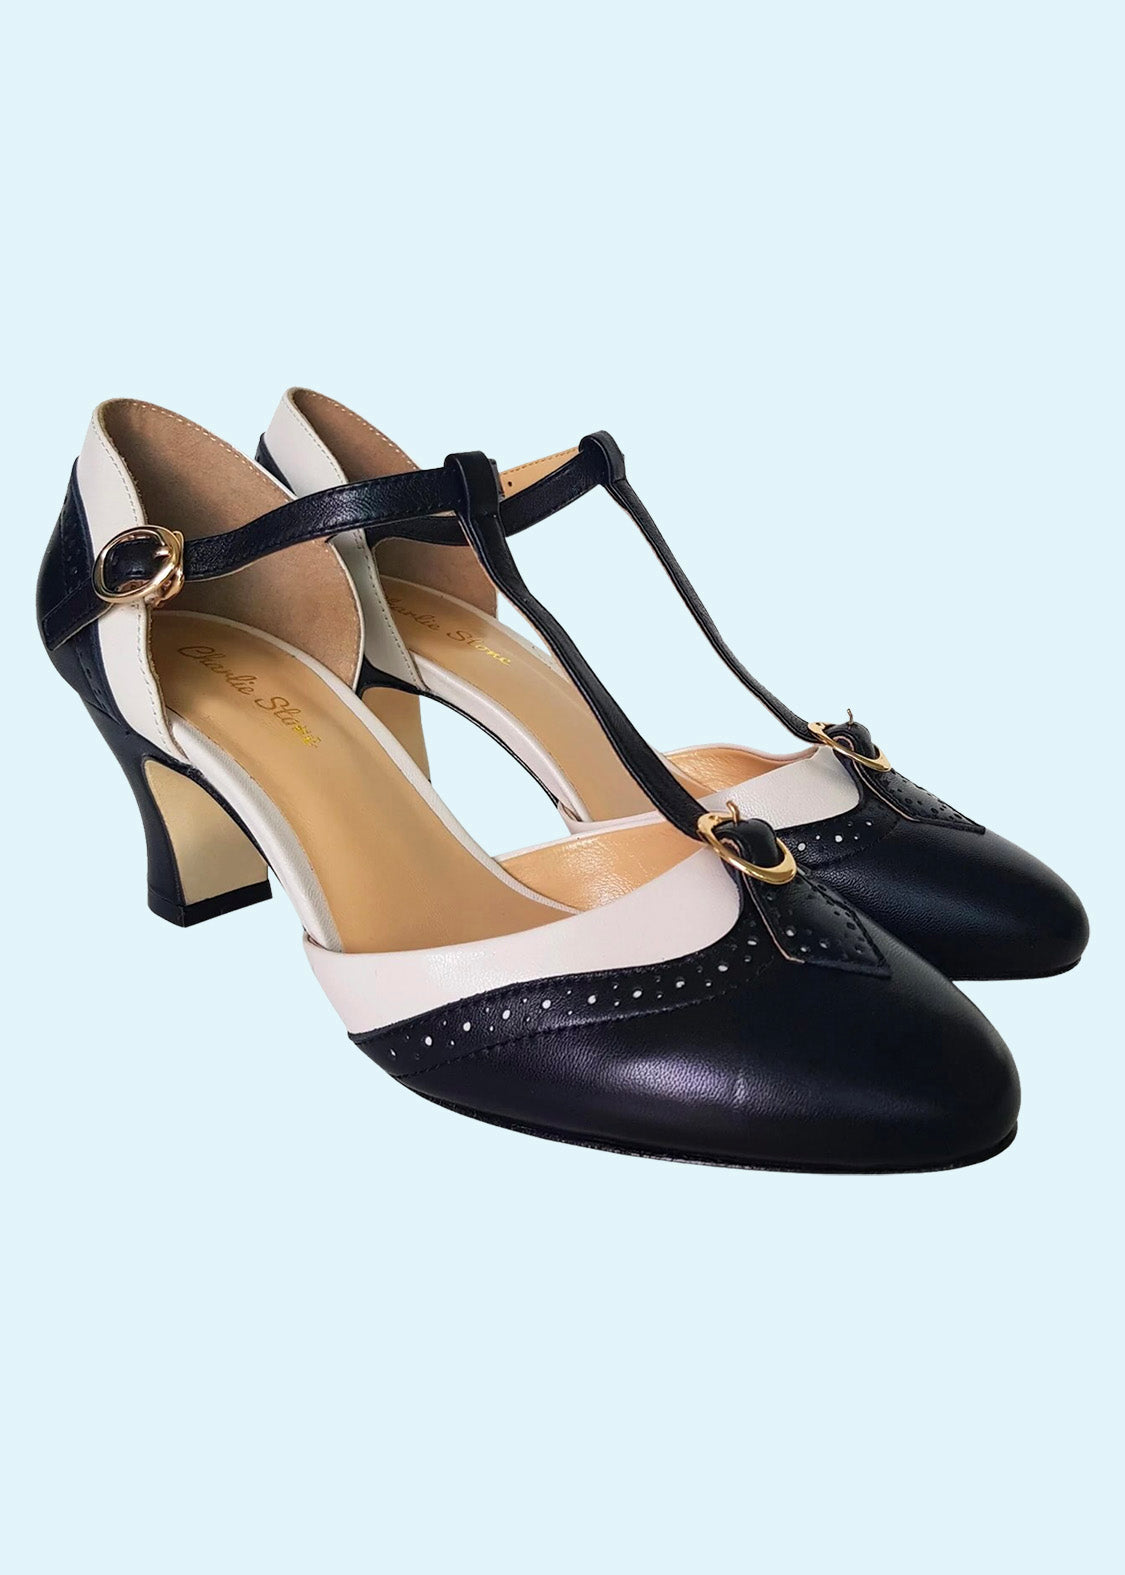 molekyle helt seriøst Sømil Parisienne vintage 30er stils sort hvid T-rem sko fra Charlie Stone